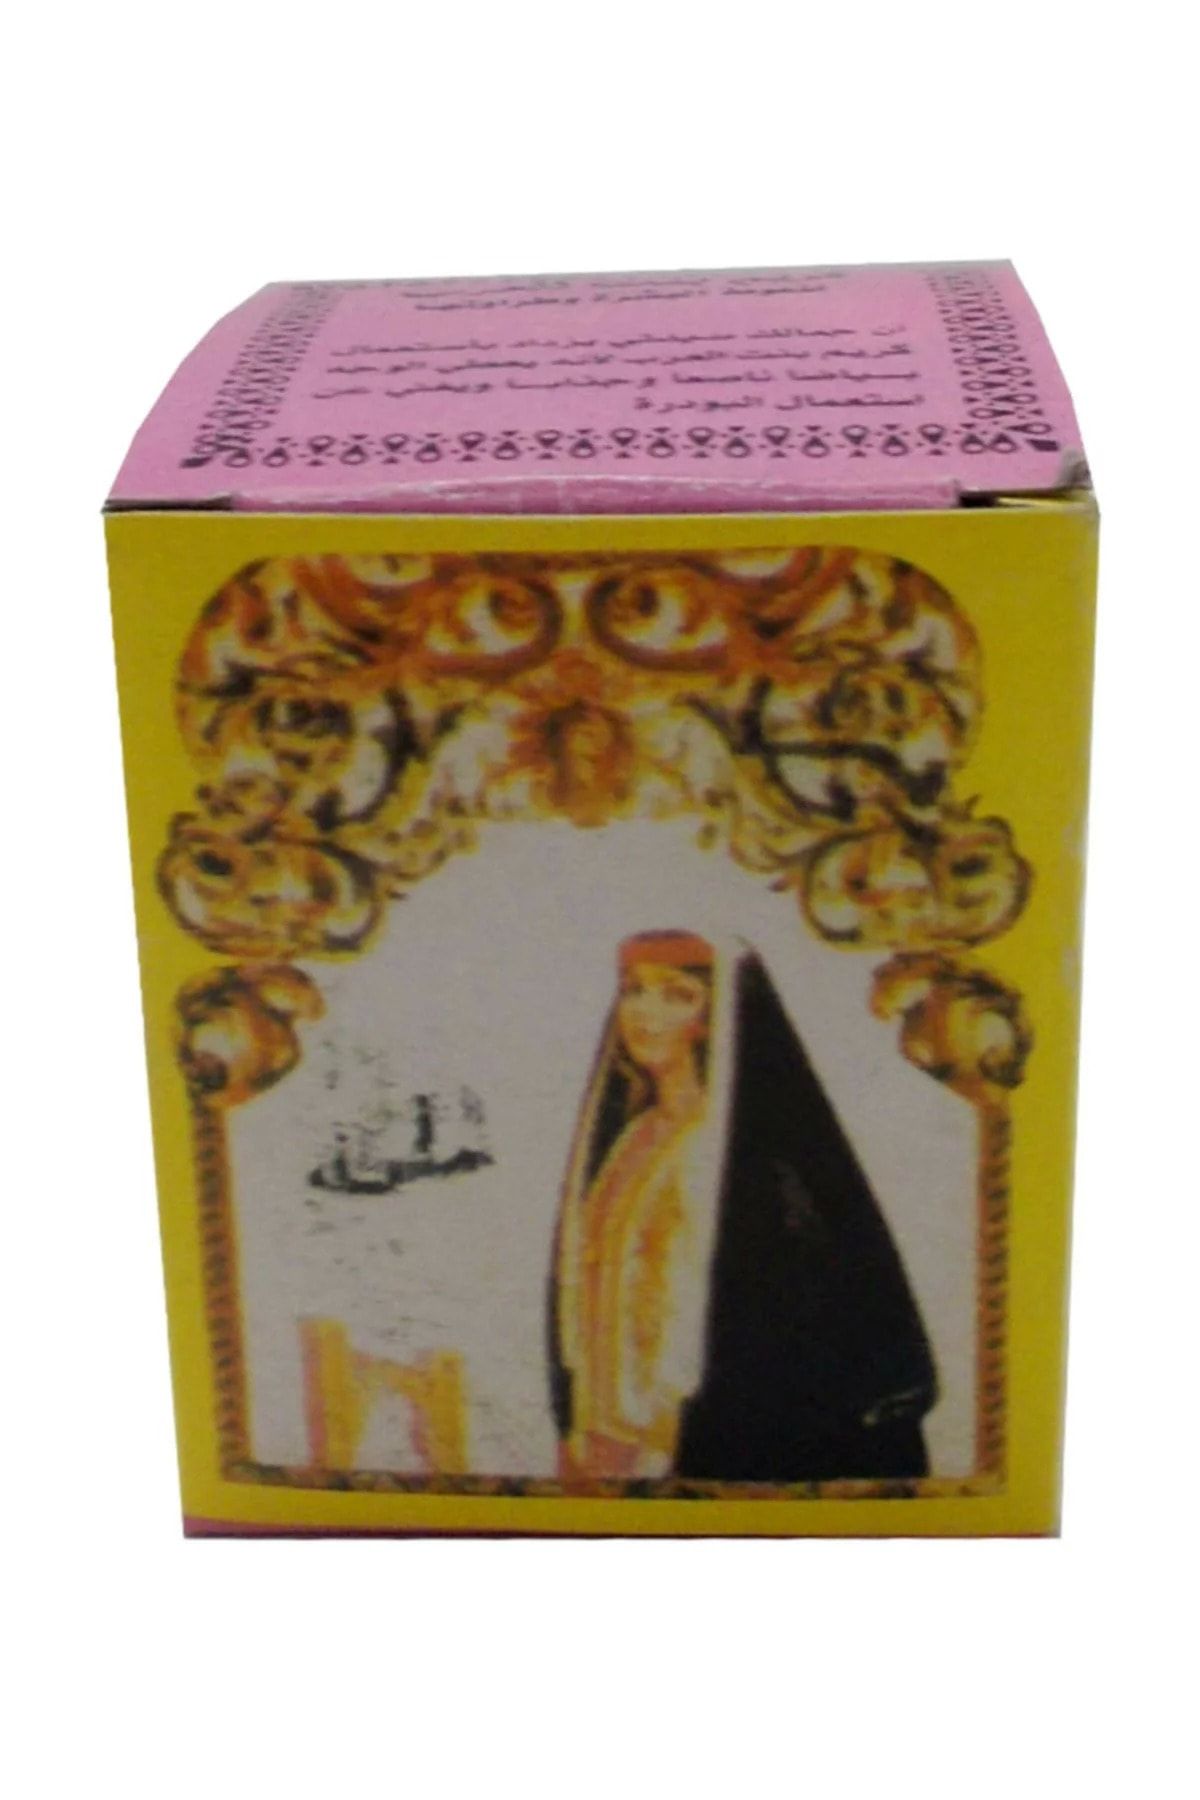 AKTARFAN Arap Kızı Cilt Kremi Yağlı Cilt 12 gr